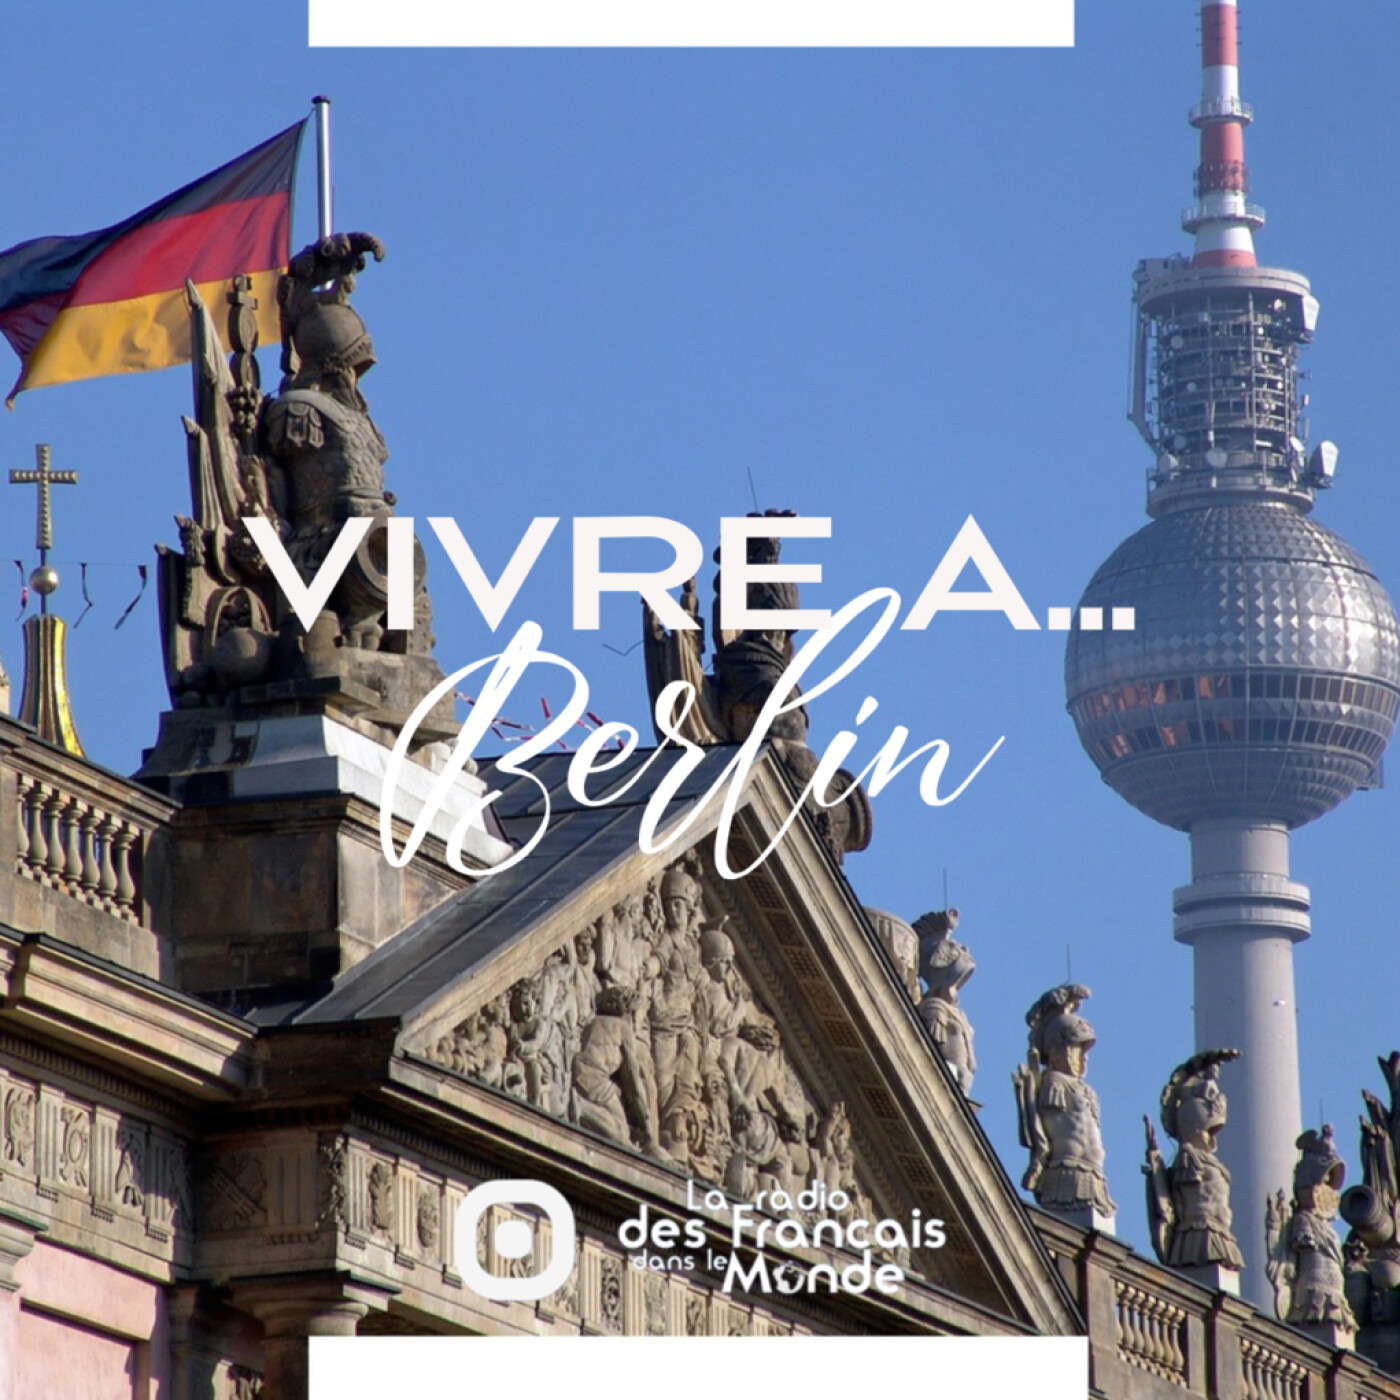 VIVRE A BERLIN, comme son nom l’indique va vous faire découvrir la capitale allemande de l’intérieur, avec plein d’infos que vous ne trouverez nulle part ailleurs.